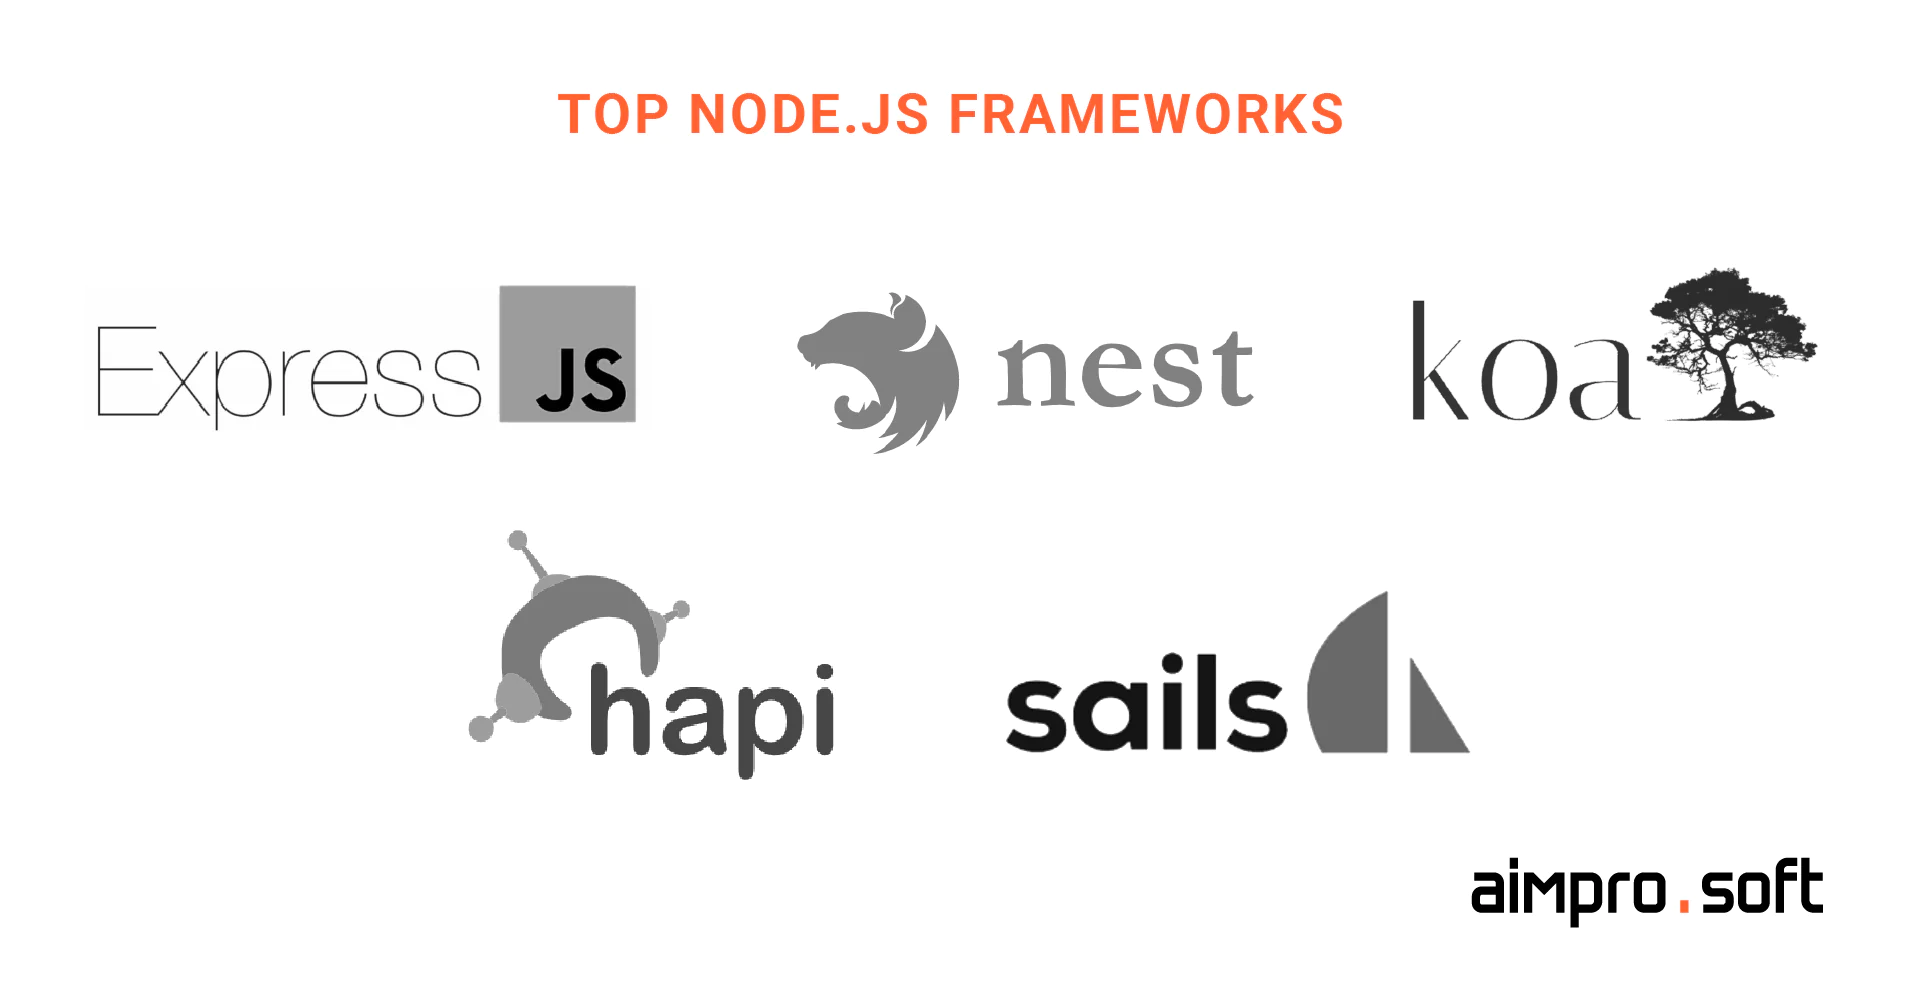 Best frameworks supporting Node.js